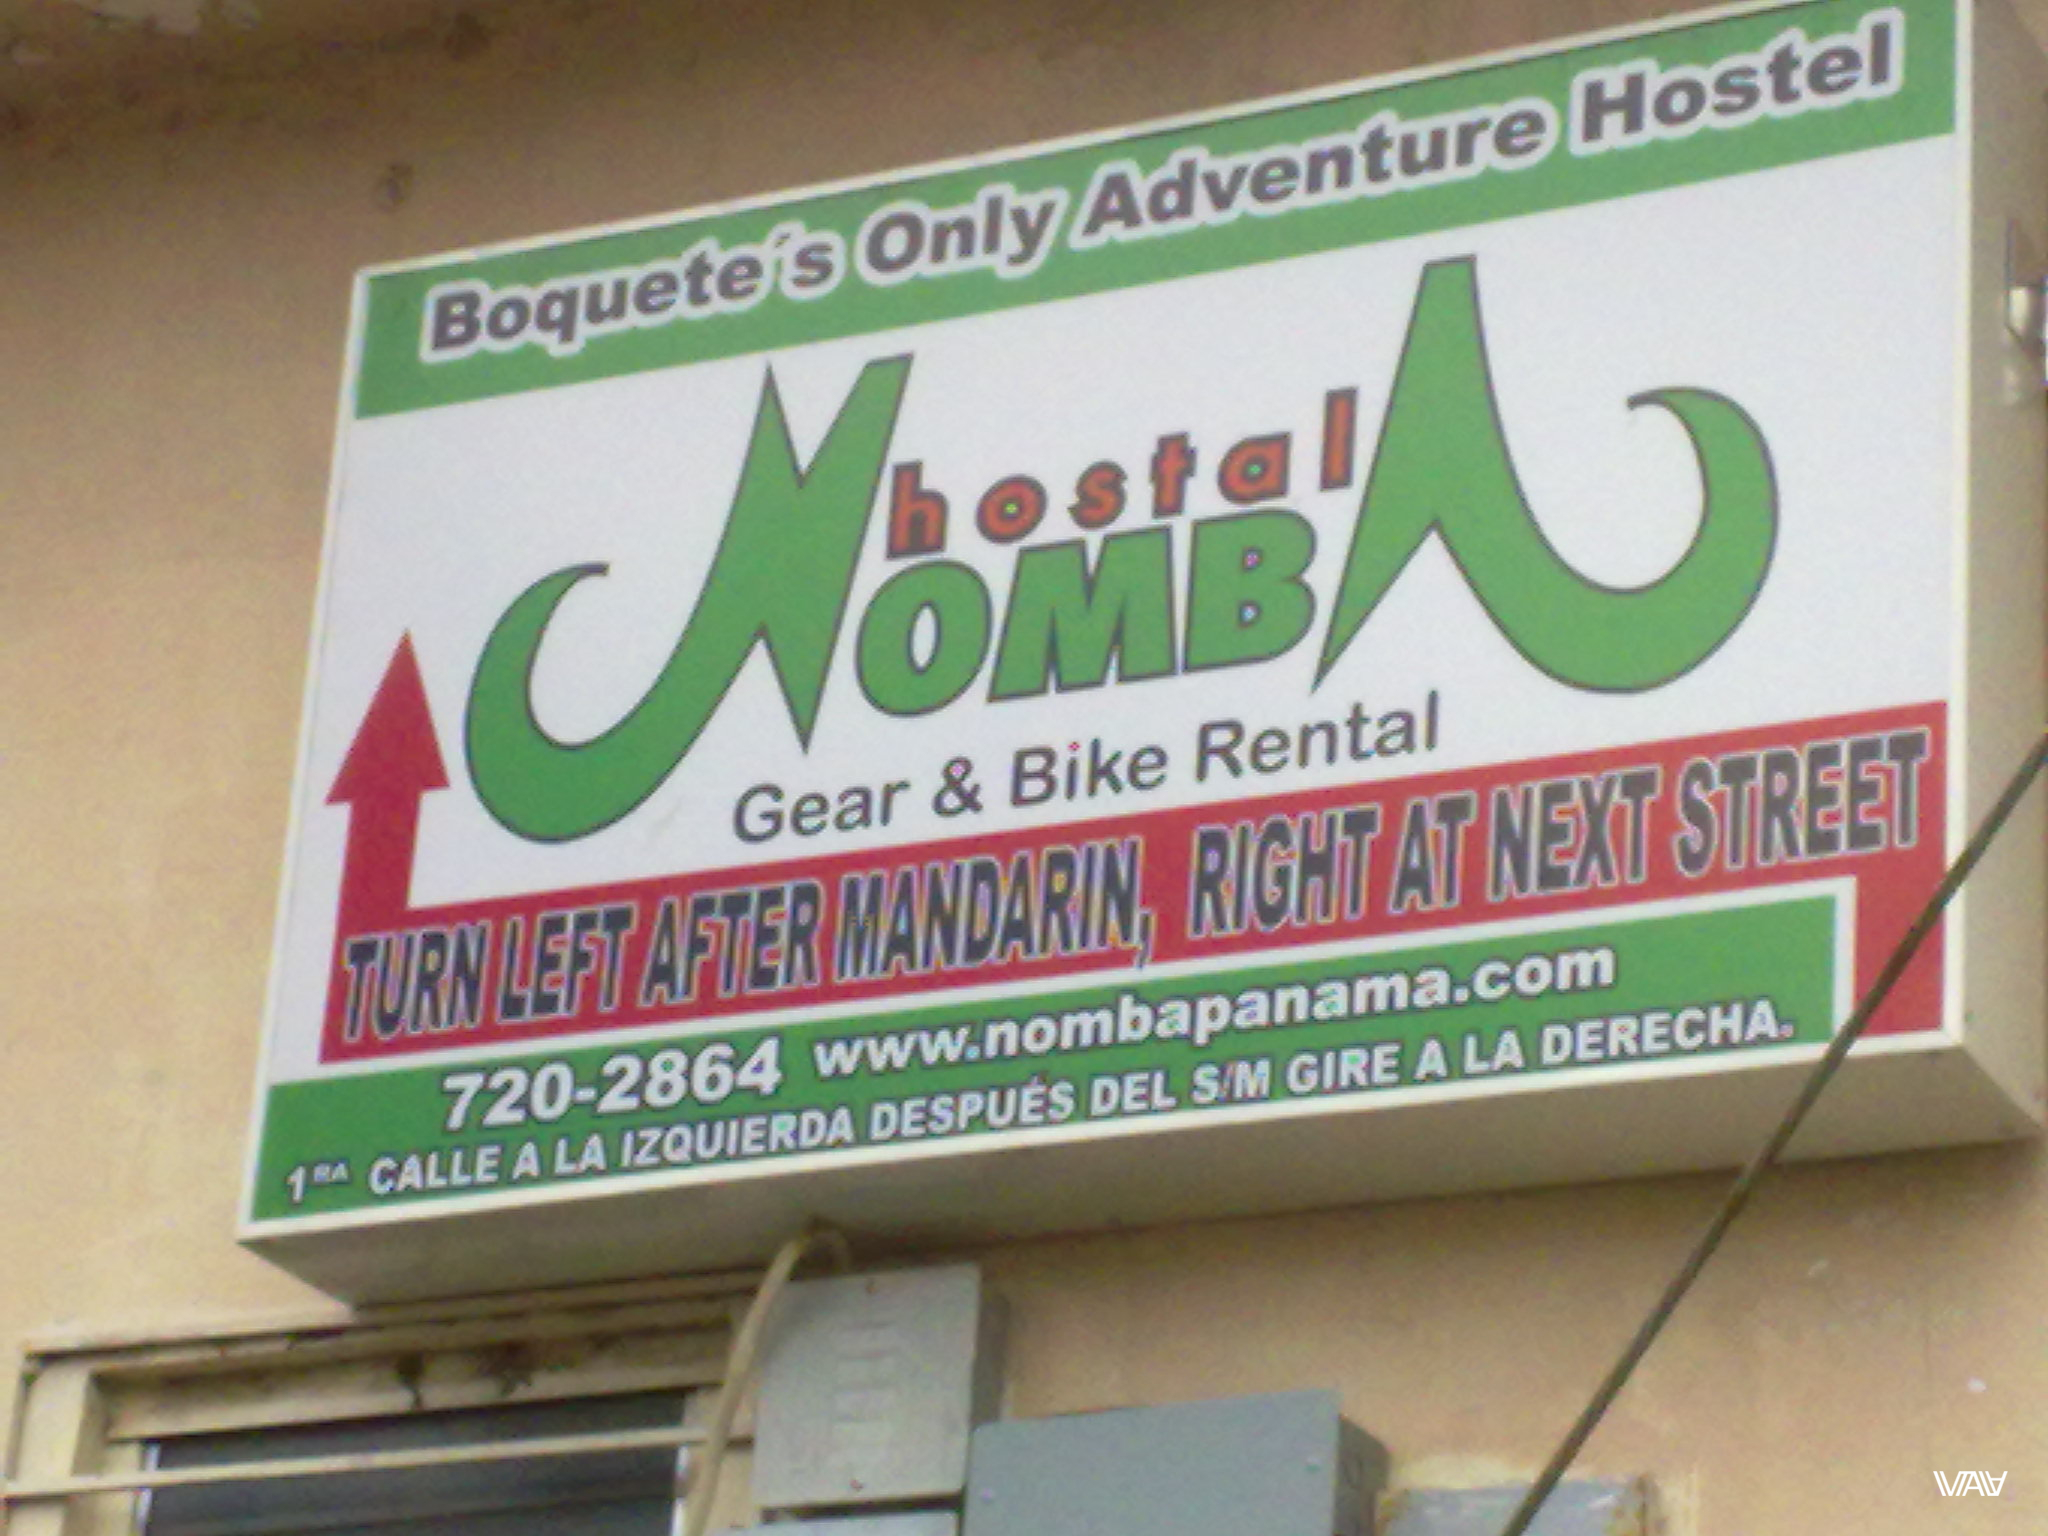 Хостел Номба (Nomba) не только хорош, но и берет на работу путешественников. Так сказать за койку и еду. Бахо Бокетэ, Панама